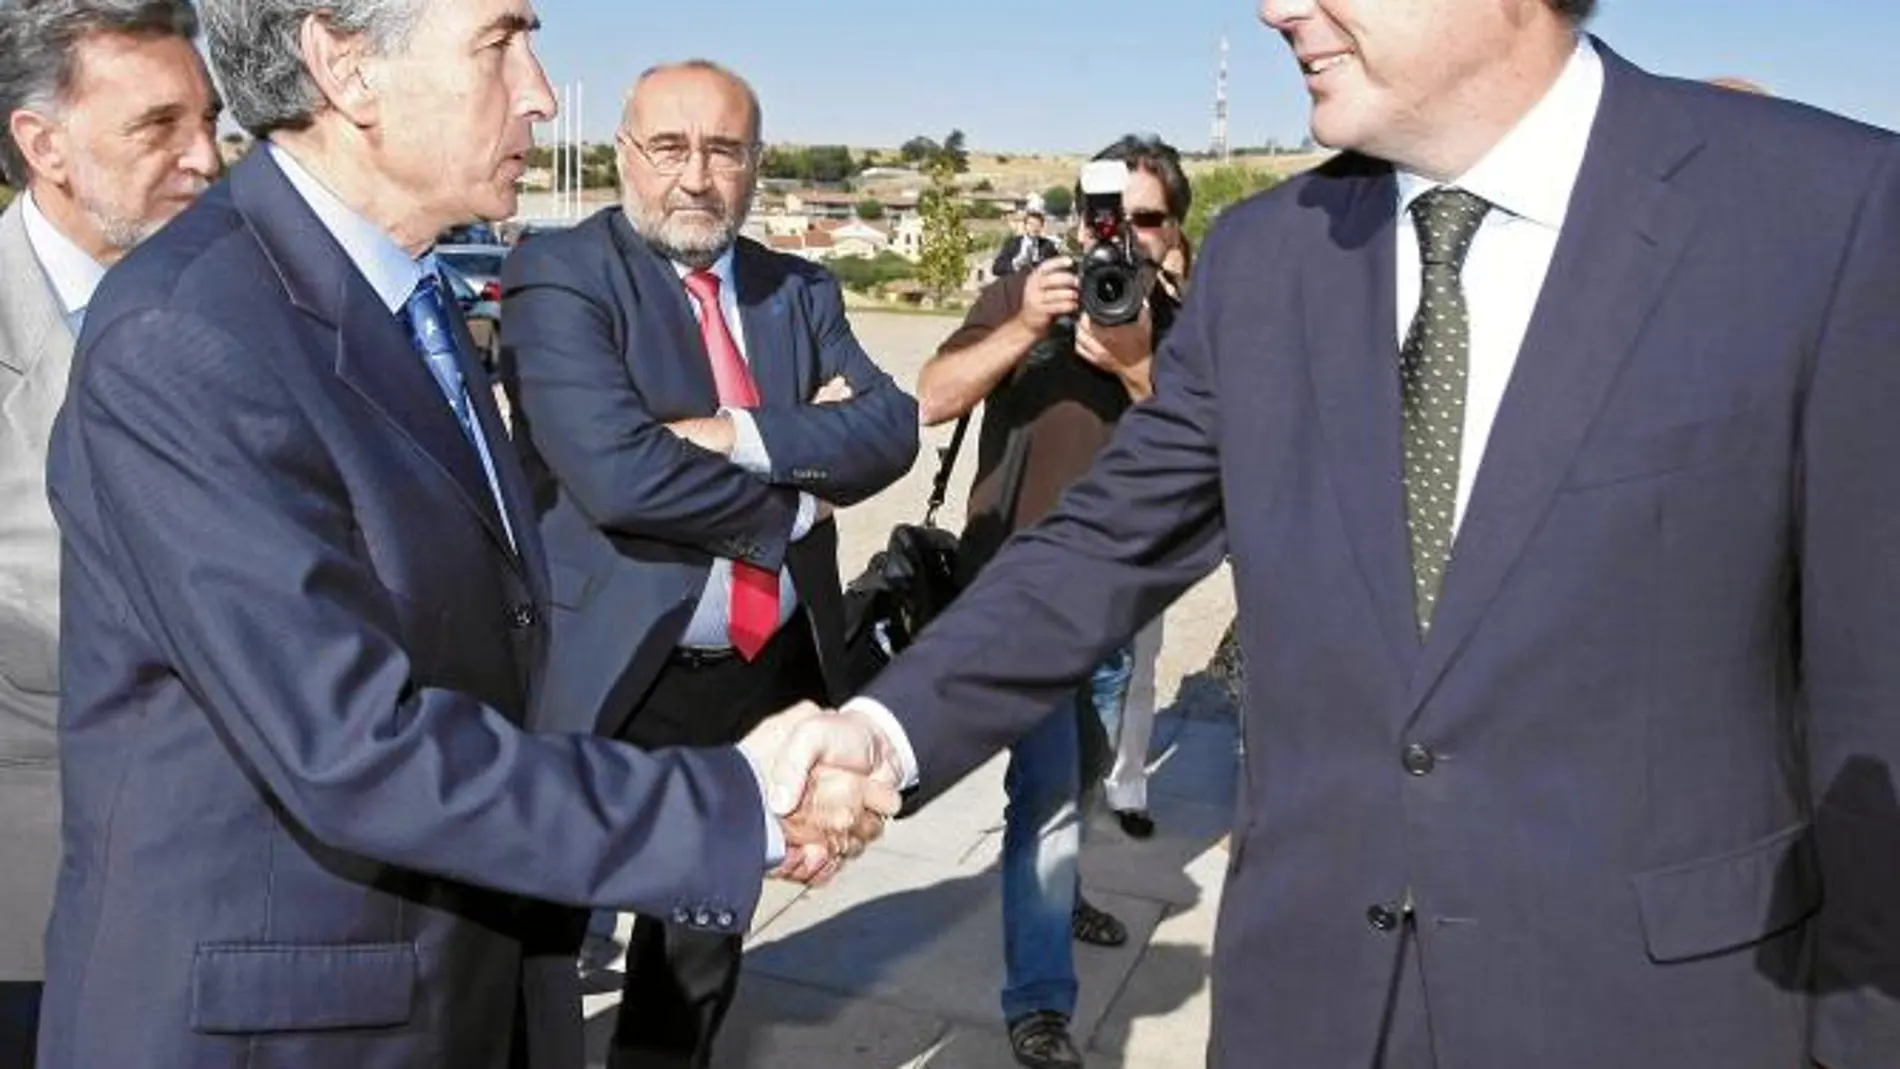 Ramón Jáuregui saluda al ex ministro de Justicia José María Michavila, momentos antes de su intervención